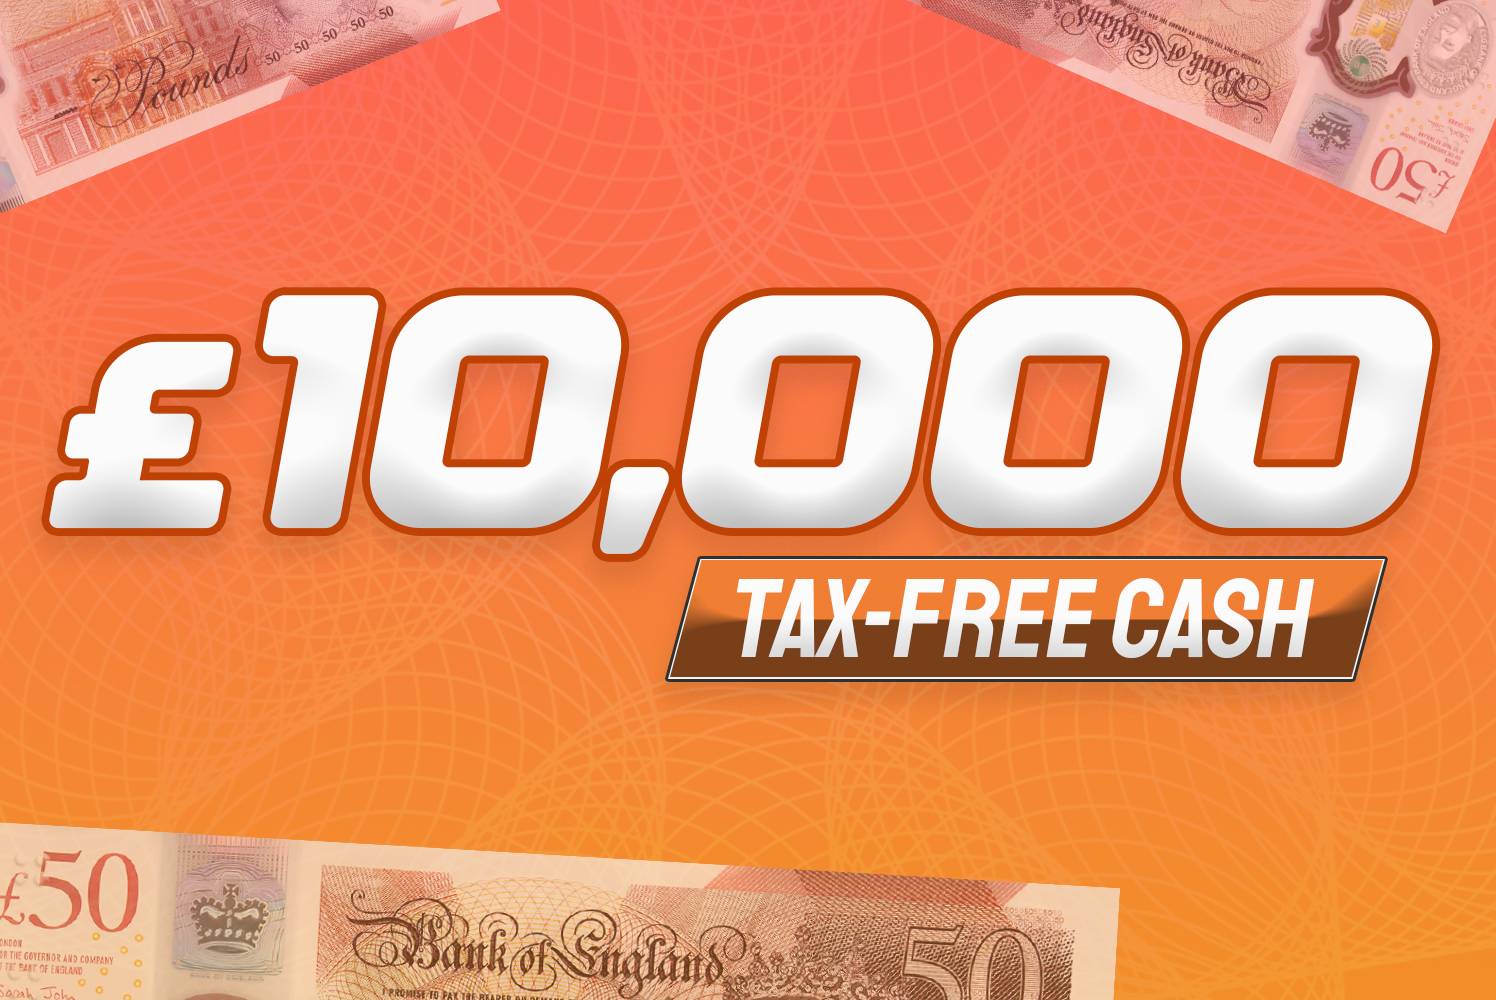 £10,000 Tax Free Cash